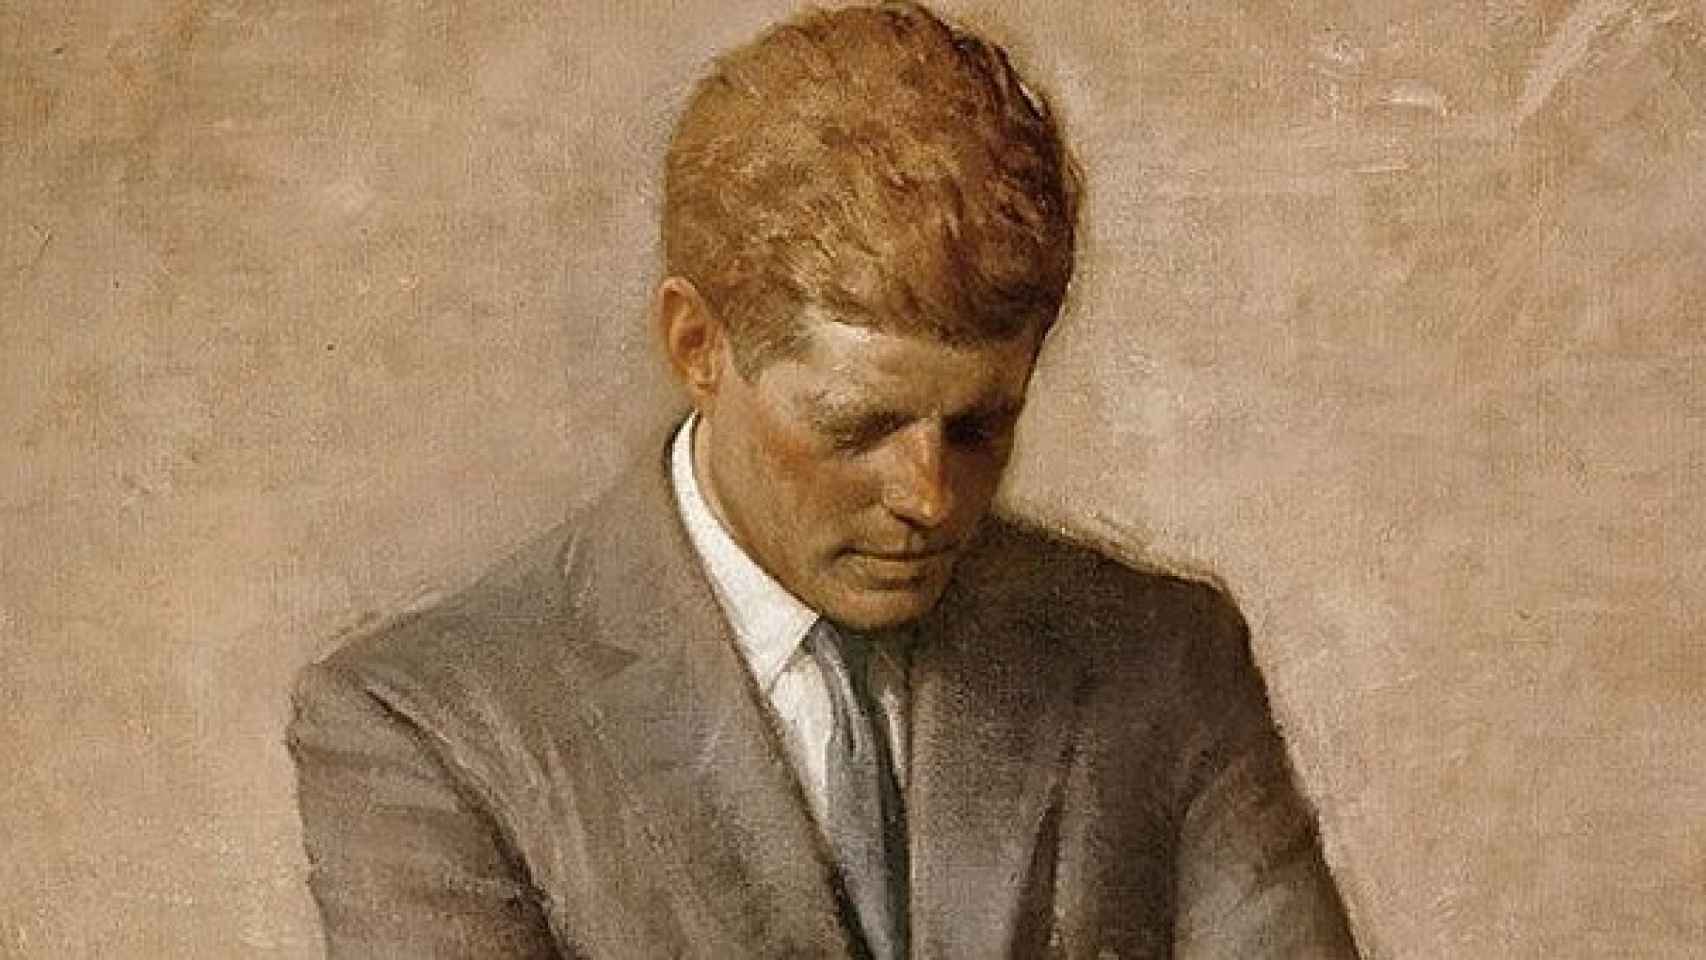 Detalle del retrato oficial de Kennedy, publicado tras su muerte, realizado por Aaron Shikler